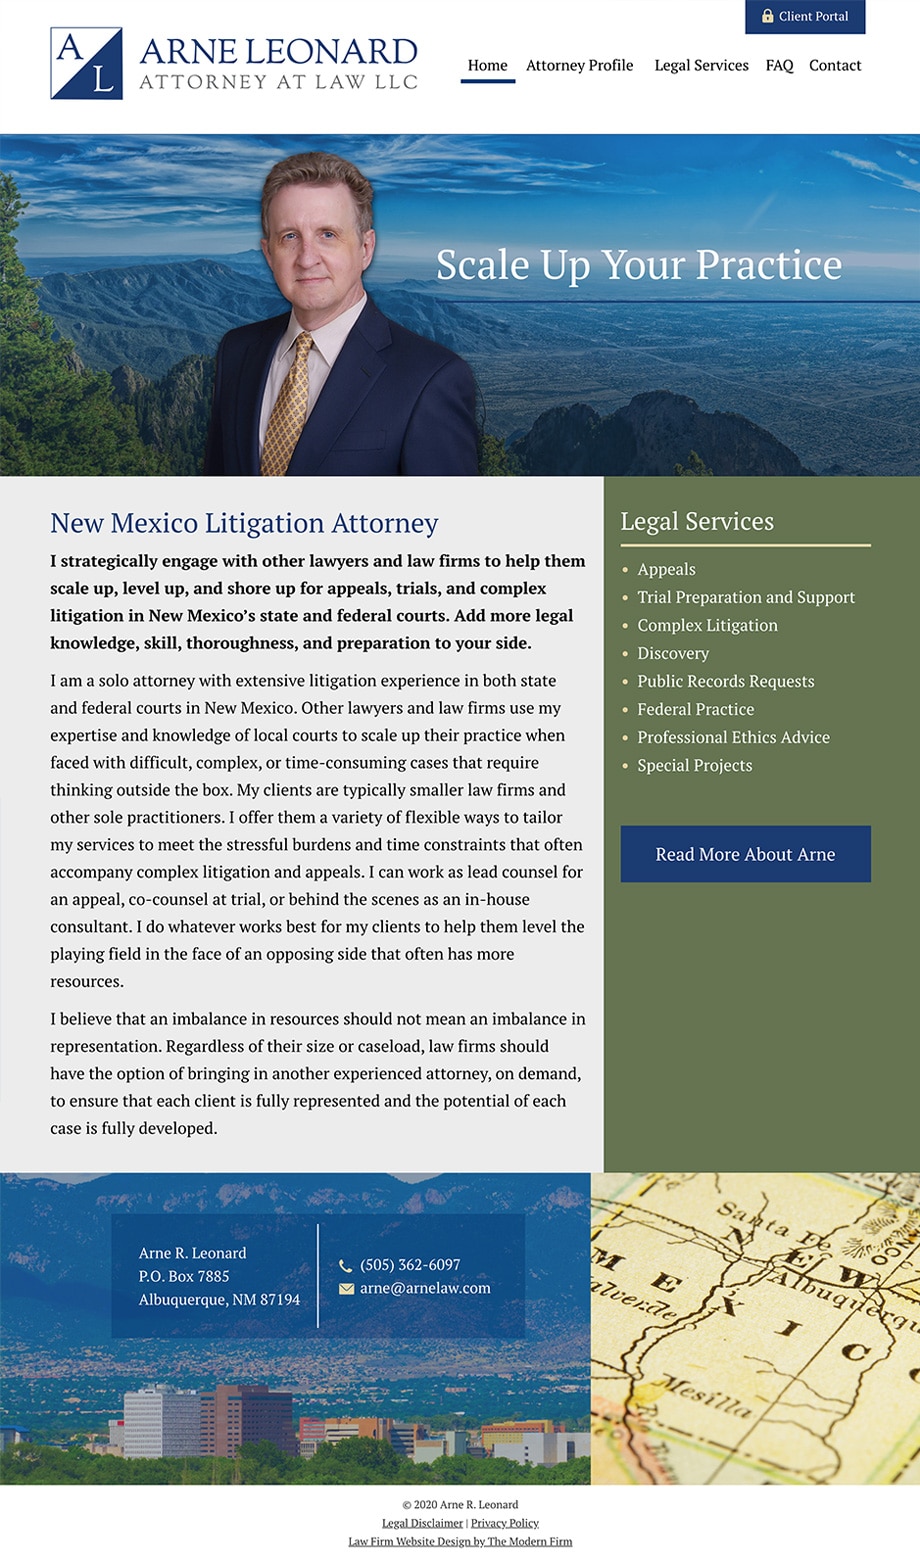 Law Firm Website Design for Arne R. Leonard